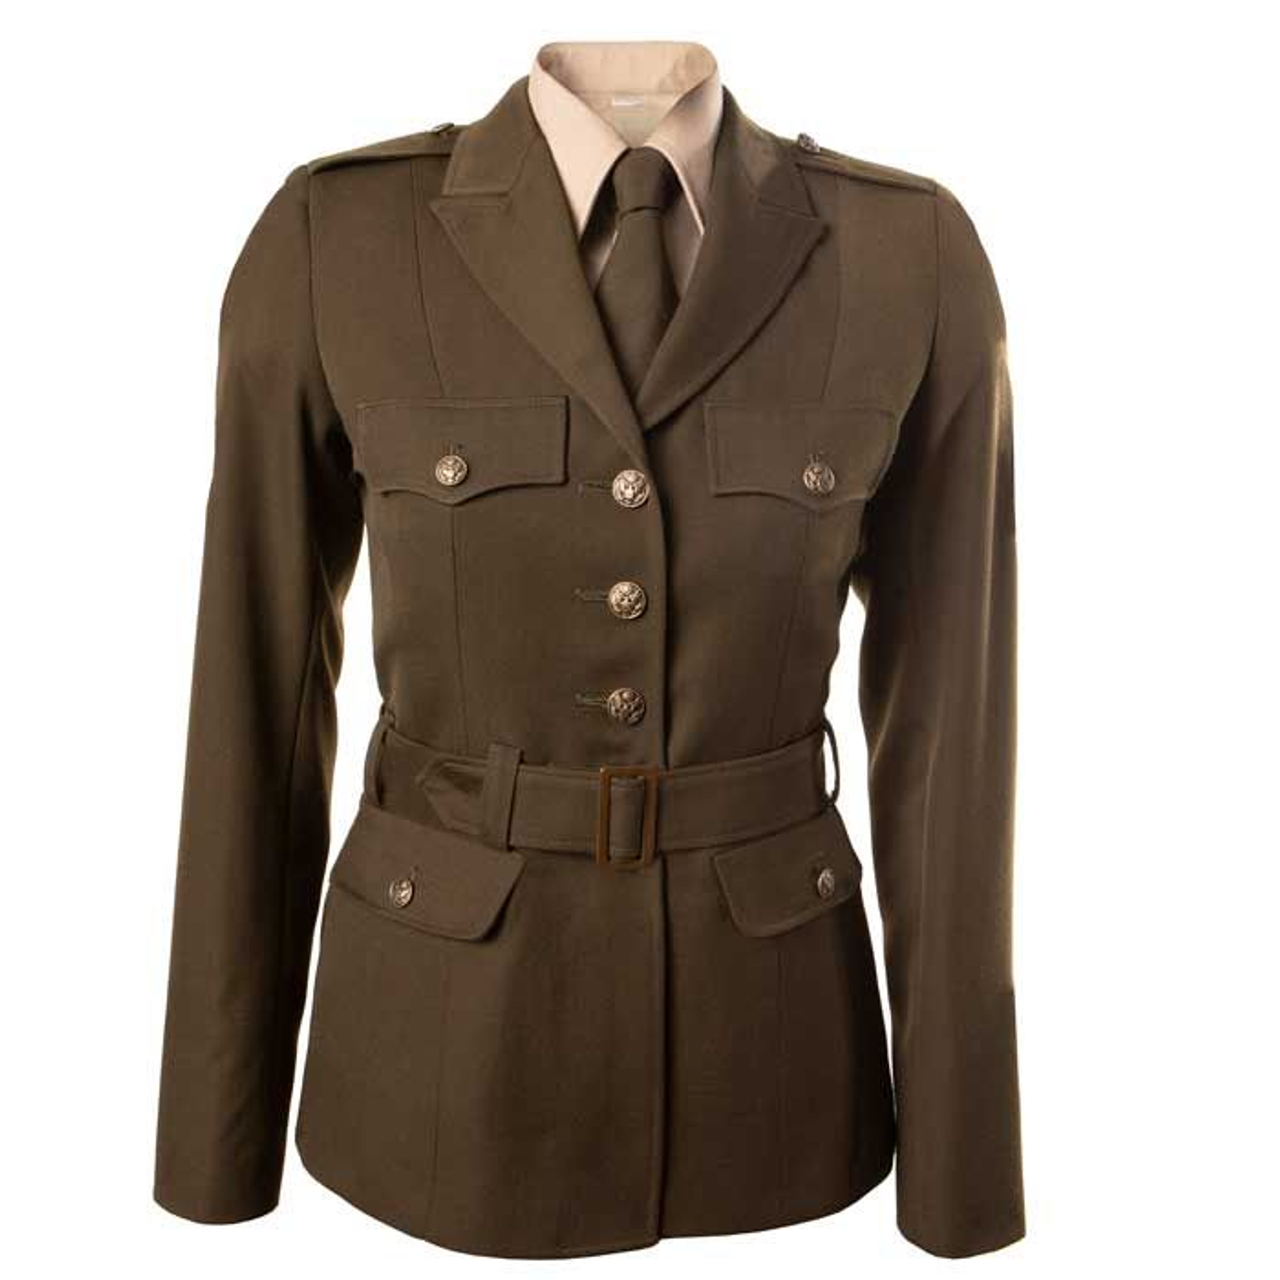 AGSU Female Eisenhower Jacket